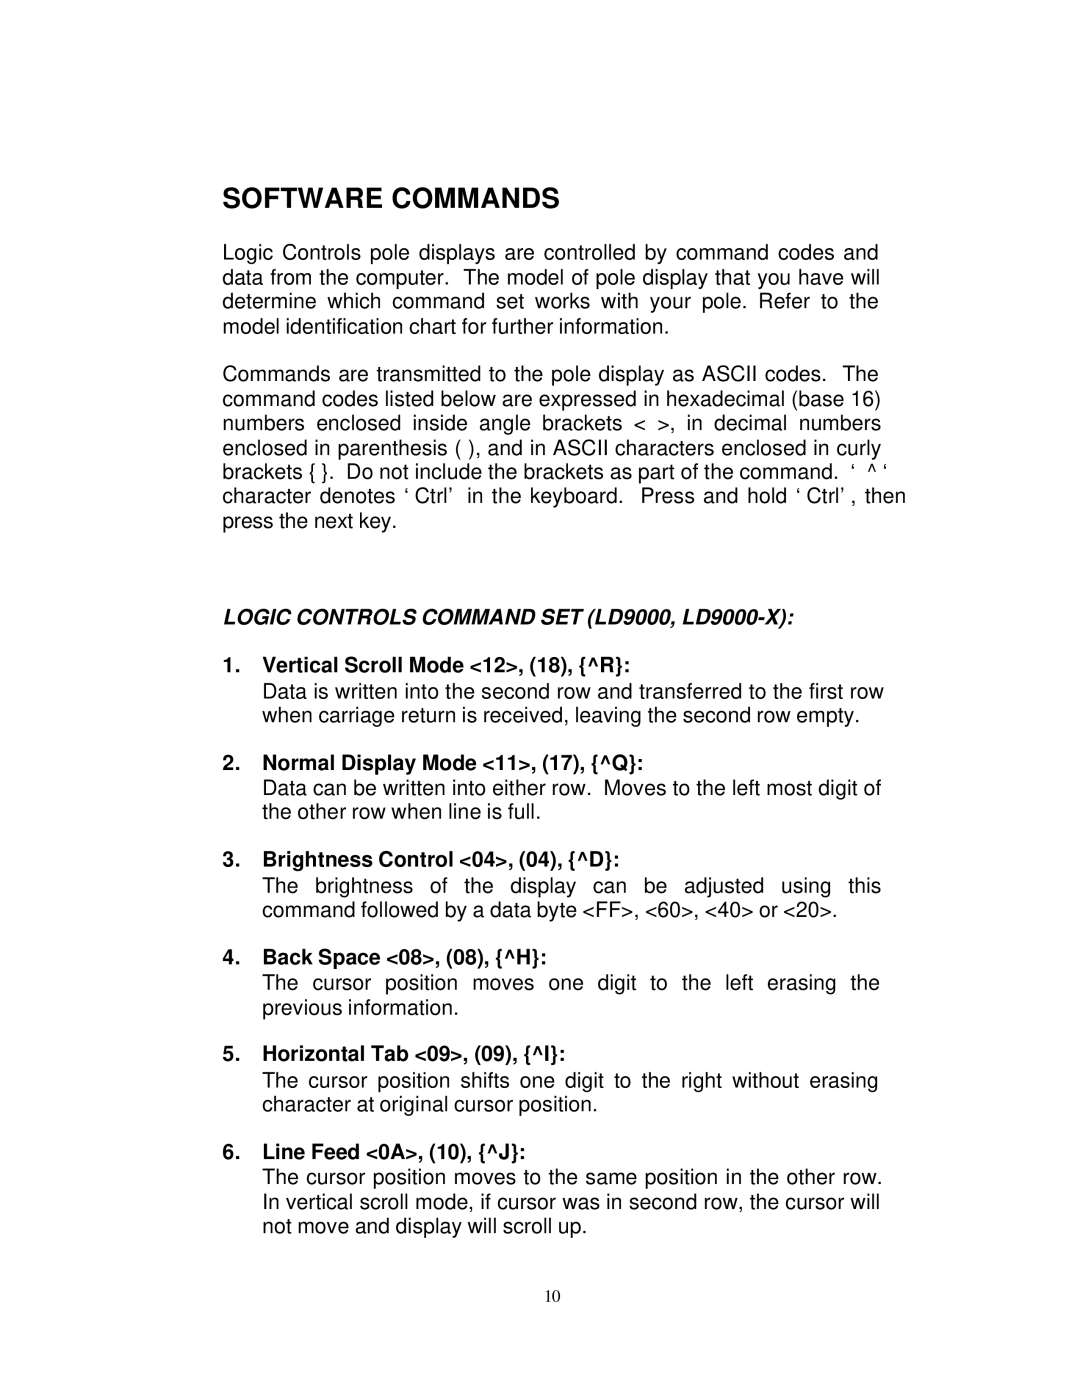 Elo TouchSystems ET1529L manual Software Commands, Logic Controls Command SET LD9000, LD9000-X 